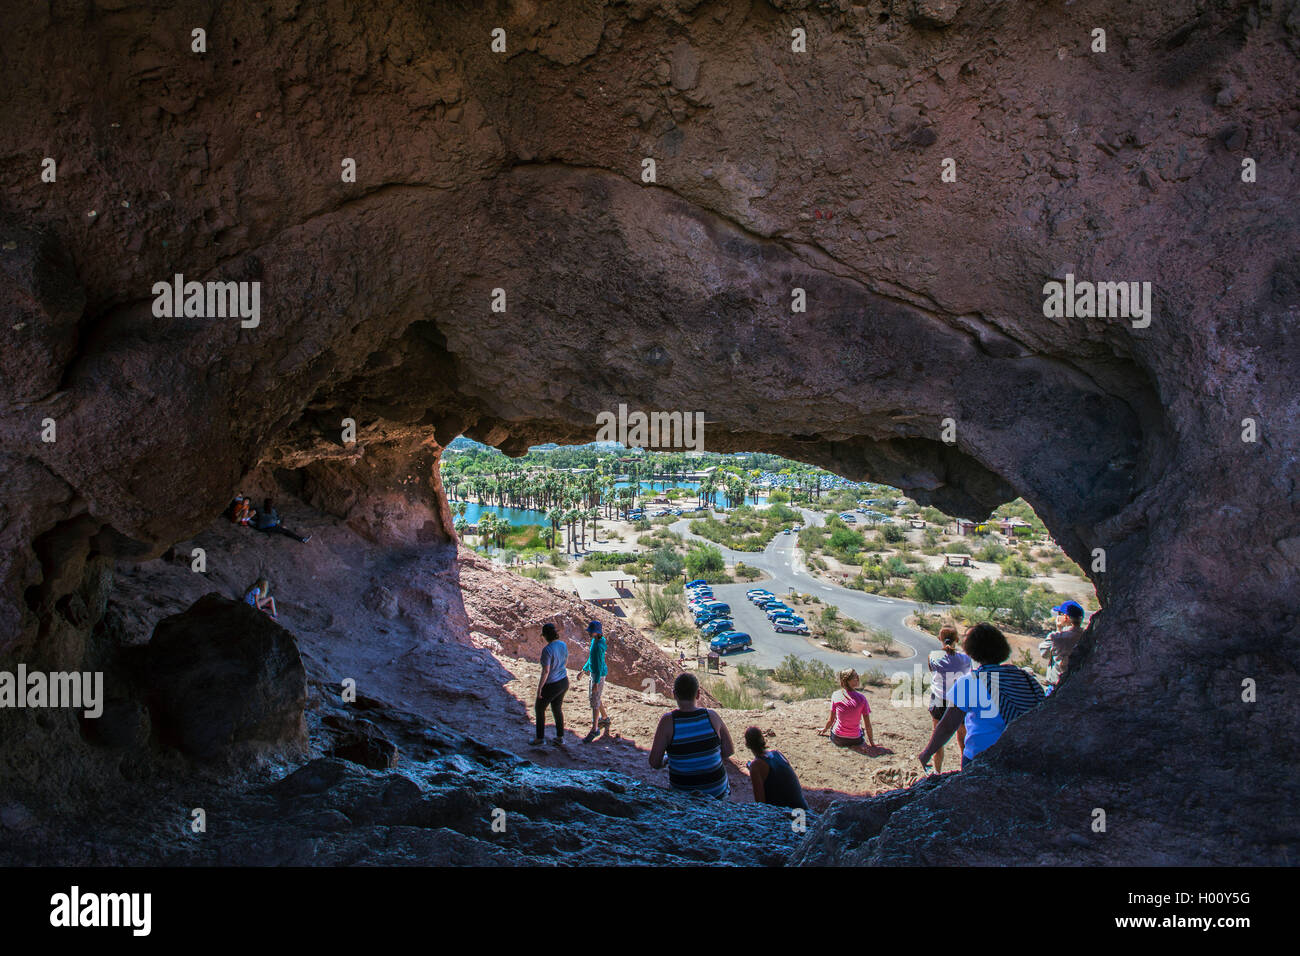 Foro-in-the-Rock, grotta in pietra arenaria rossa, vista attraverso la grotta nel parco, STATI UNITI D'AMERICA, Arizona, Papago Park di Phoenix Foto Stock